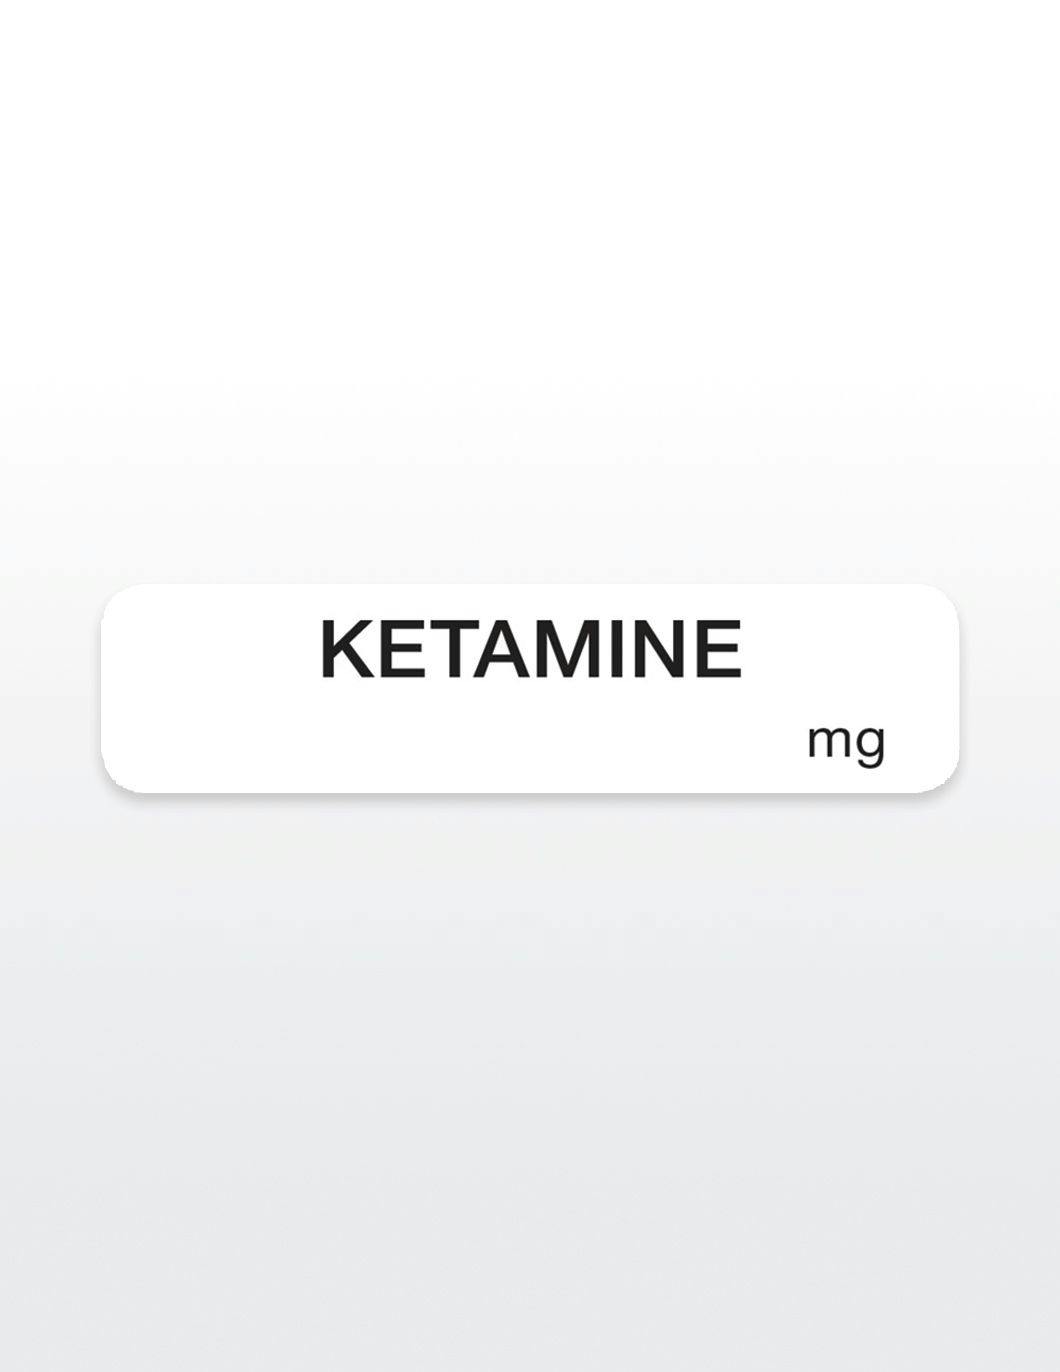 ketamine-drug-syringe-stickers